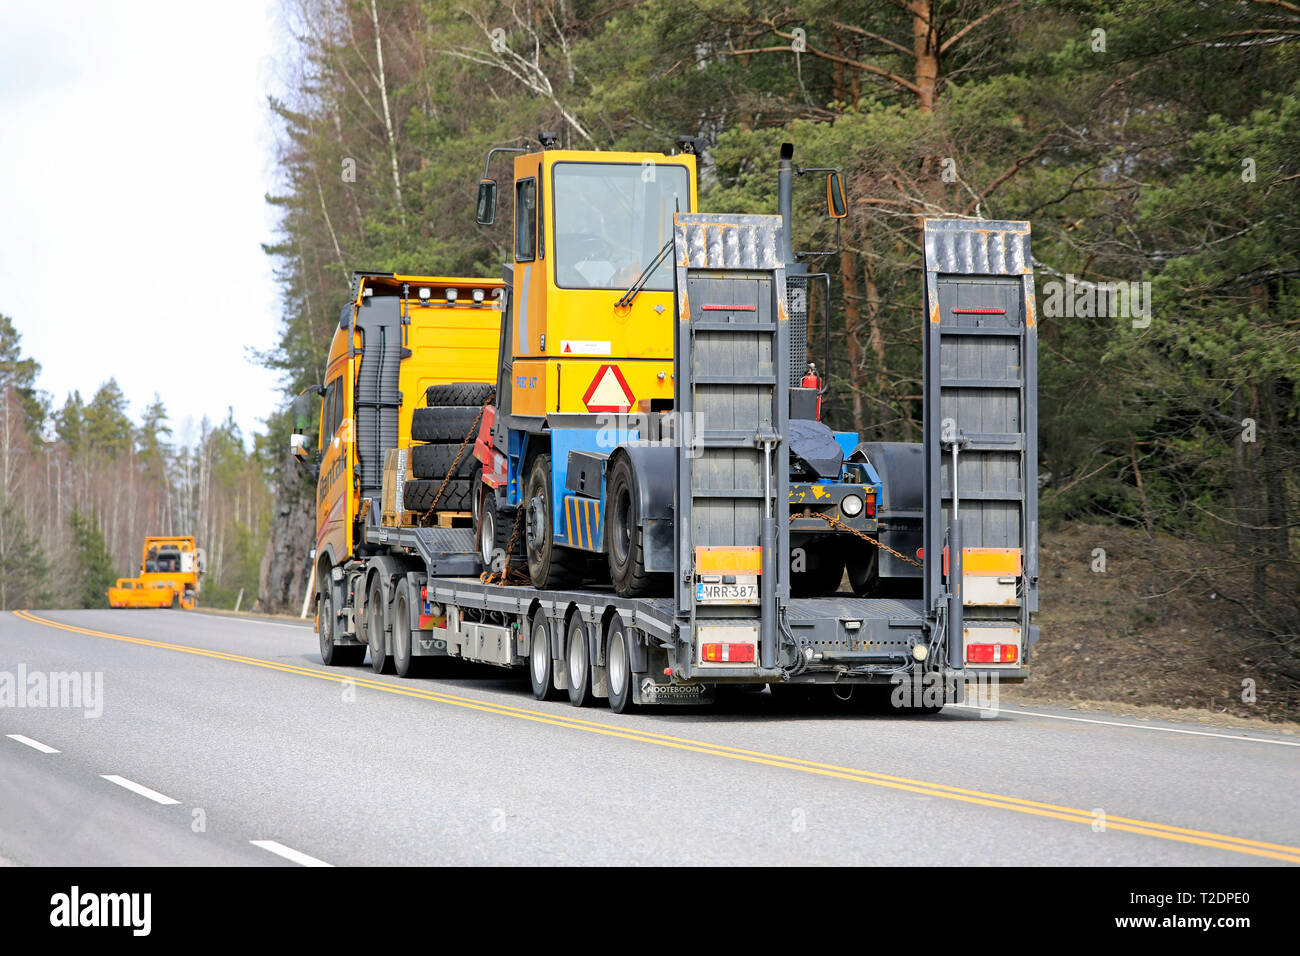 Salo, Finlandia - 29 Marzo 2019: Giallo Volvo FH carrello terminale tira il trattore su un rimorchio Noteboom in convoglio con un altro carrello della stessa società. Foto Stock